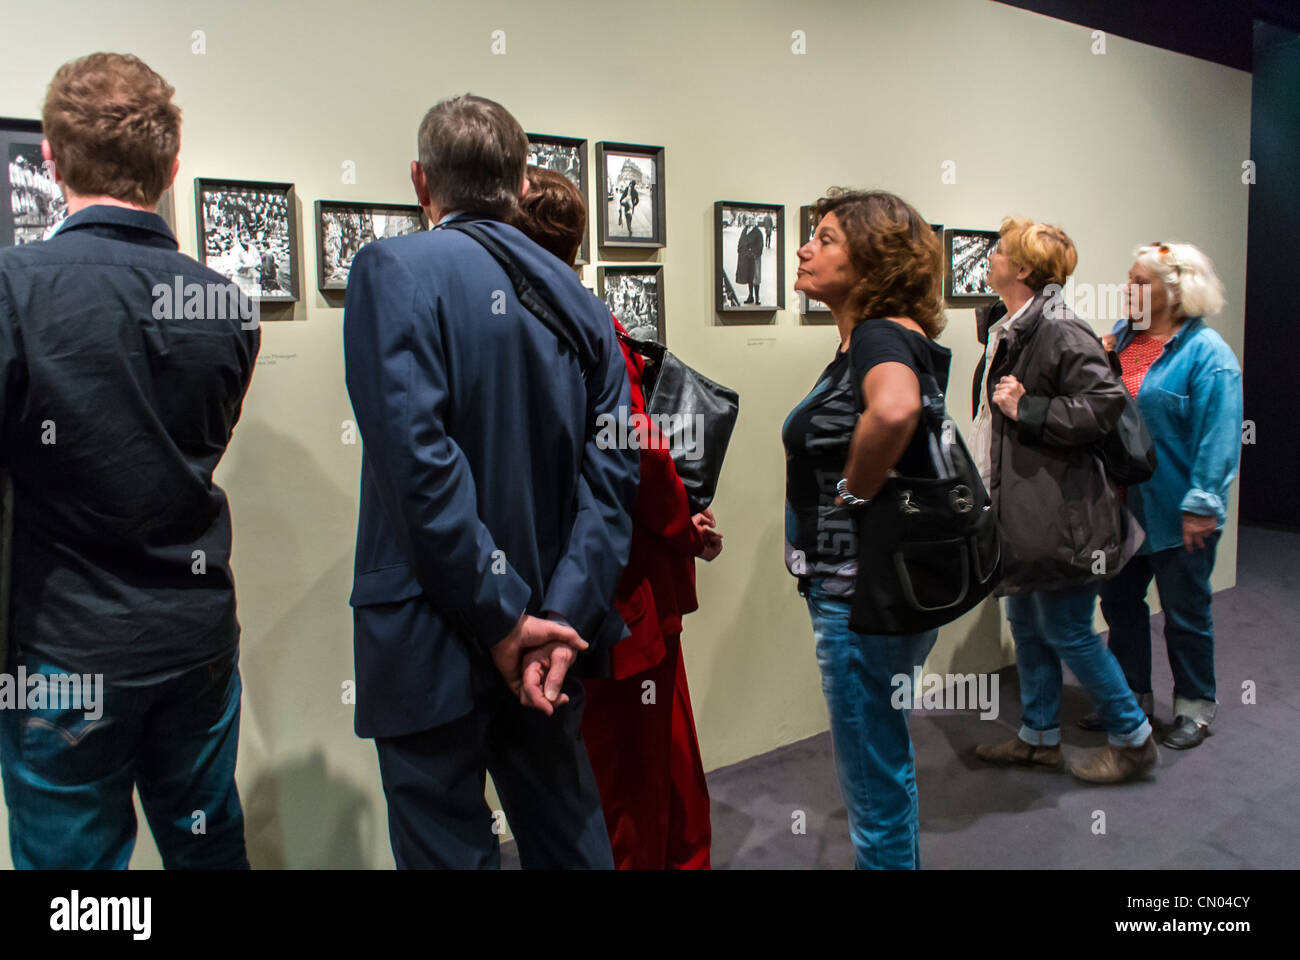 Paris, Frankreich, Leute, die sich die Fotoausstellung ansehen, Kunstausstellung im Rathausgebäude, Archivfotos von Paris, von Robert Doisneau, französischer Fotograf Stockfoto